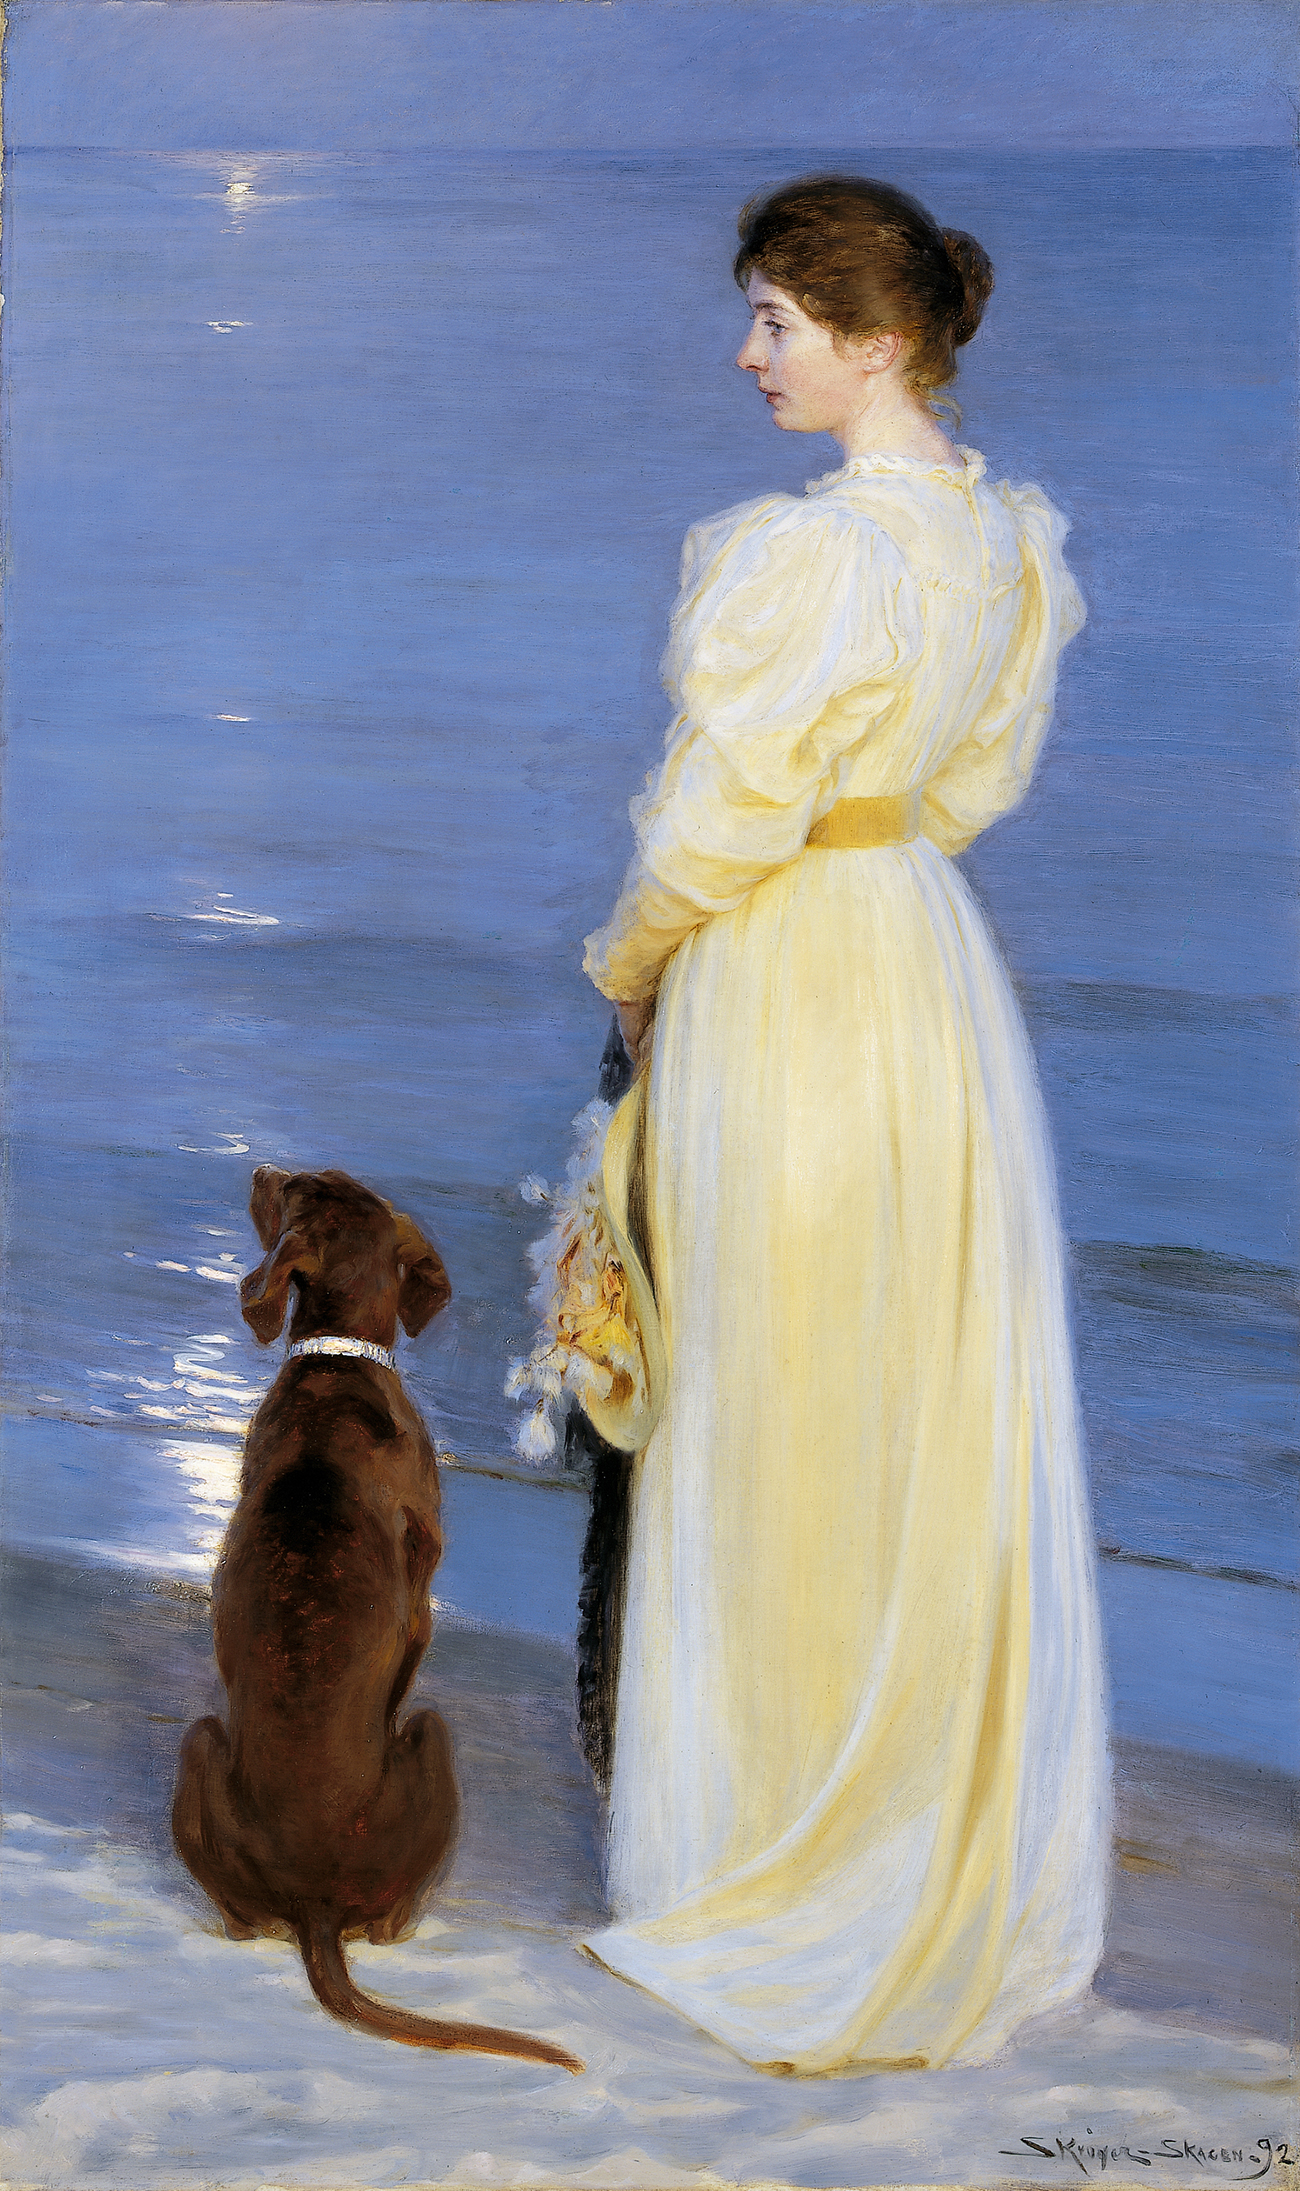 斯卡恩的夏日傍晚 by P.S. Krøyer - 1892 - 206 x 123 cm 